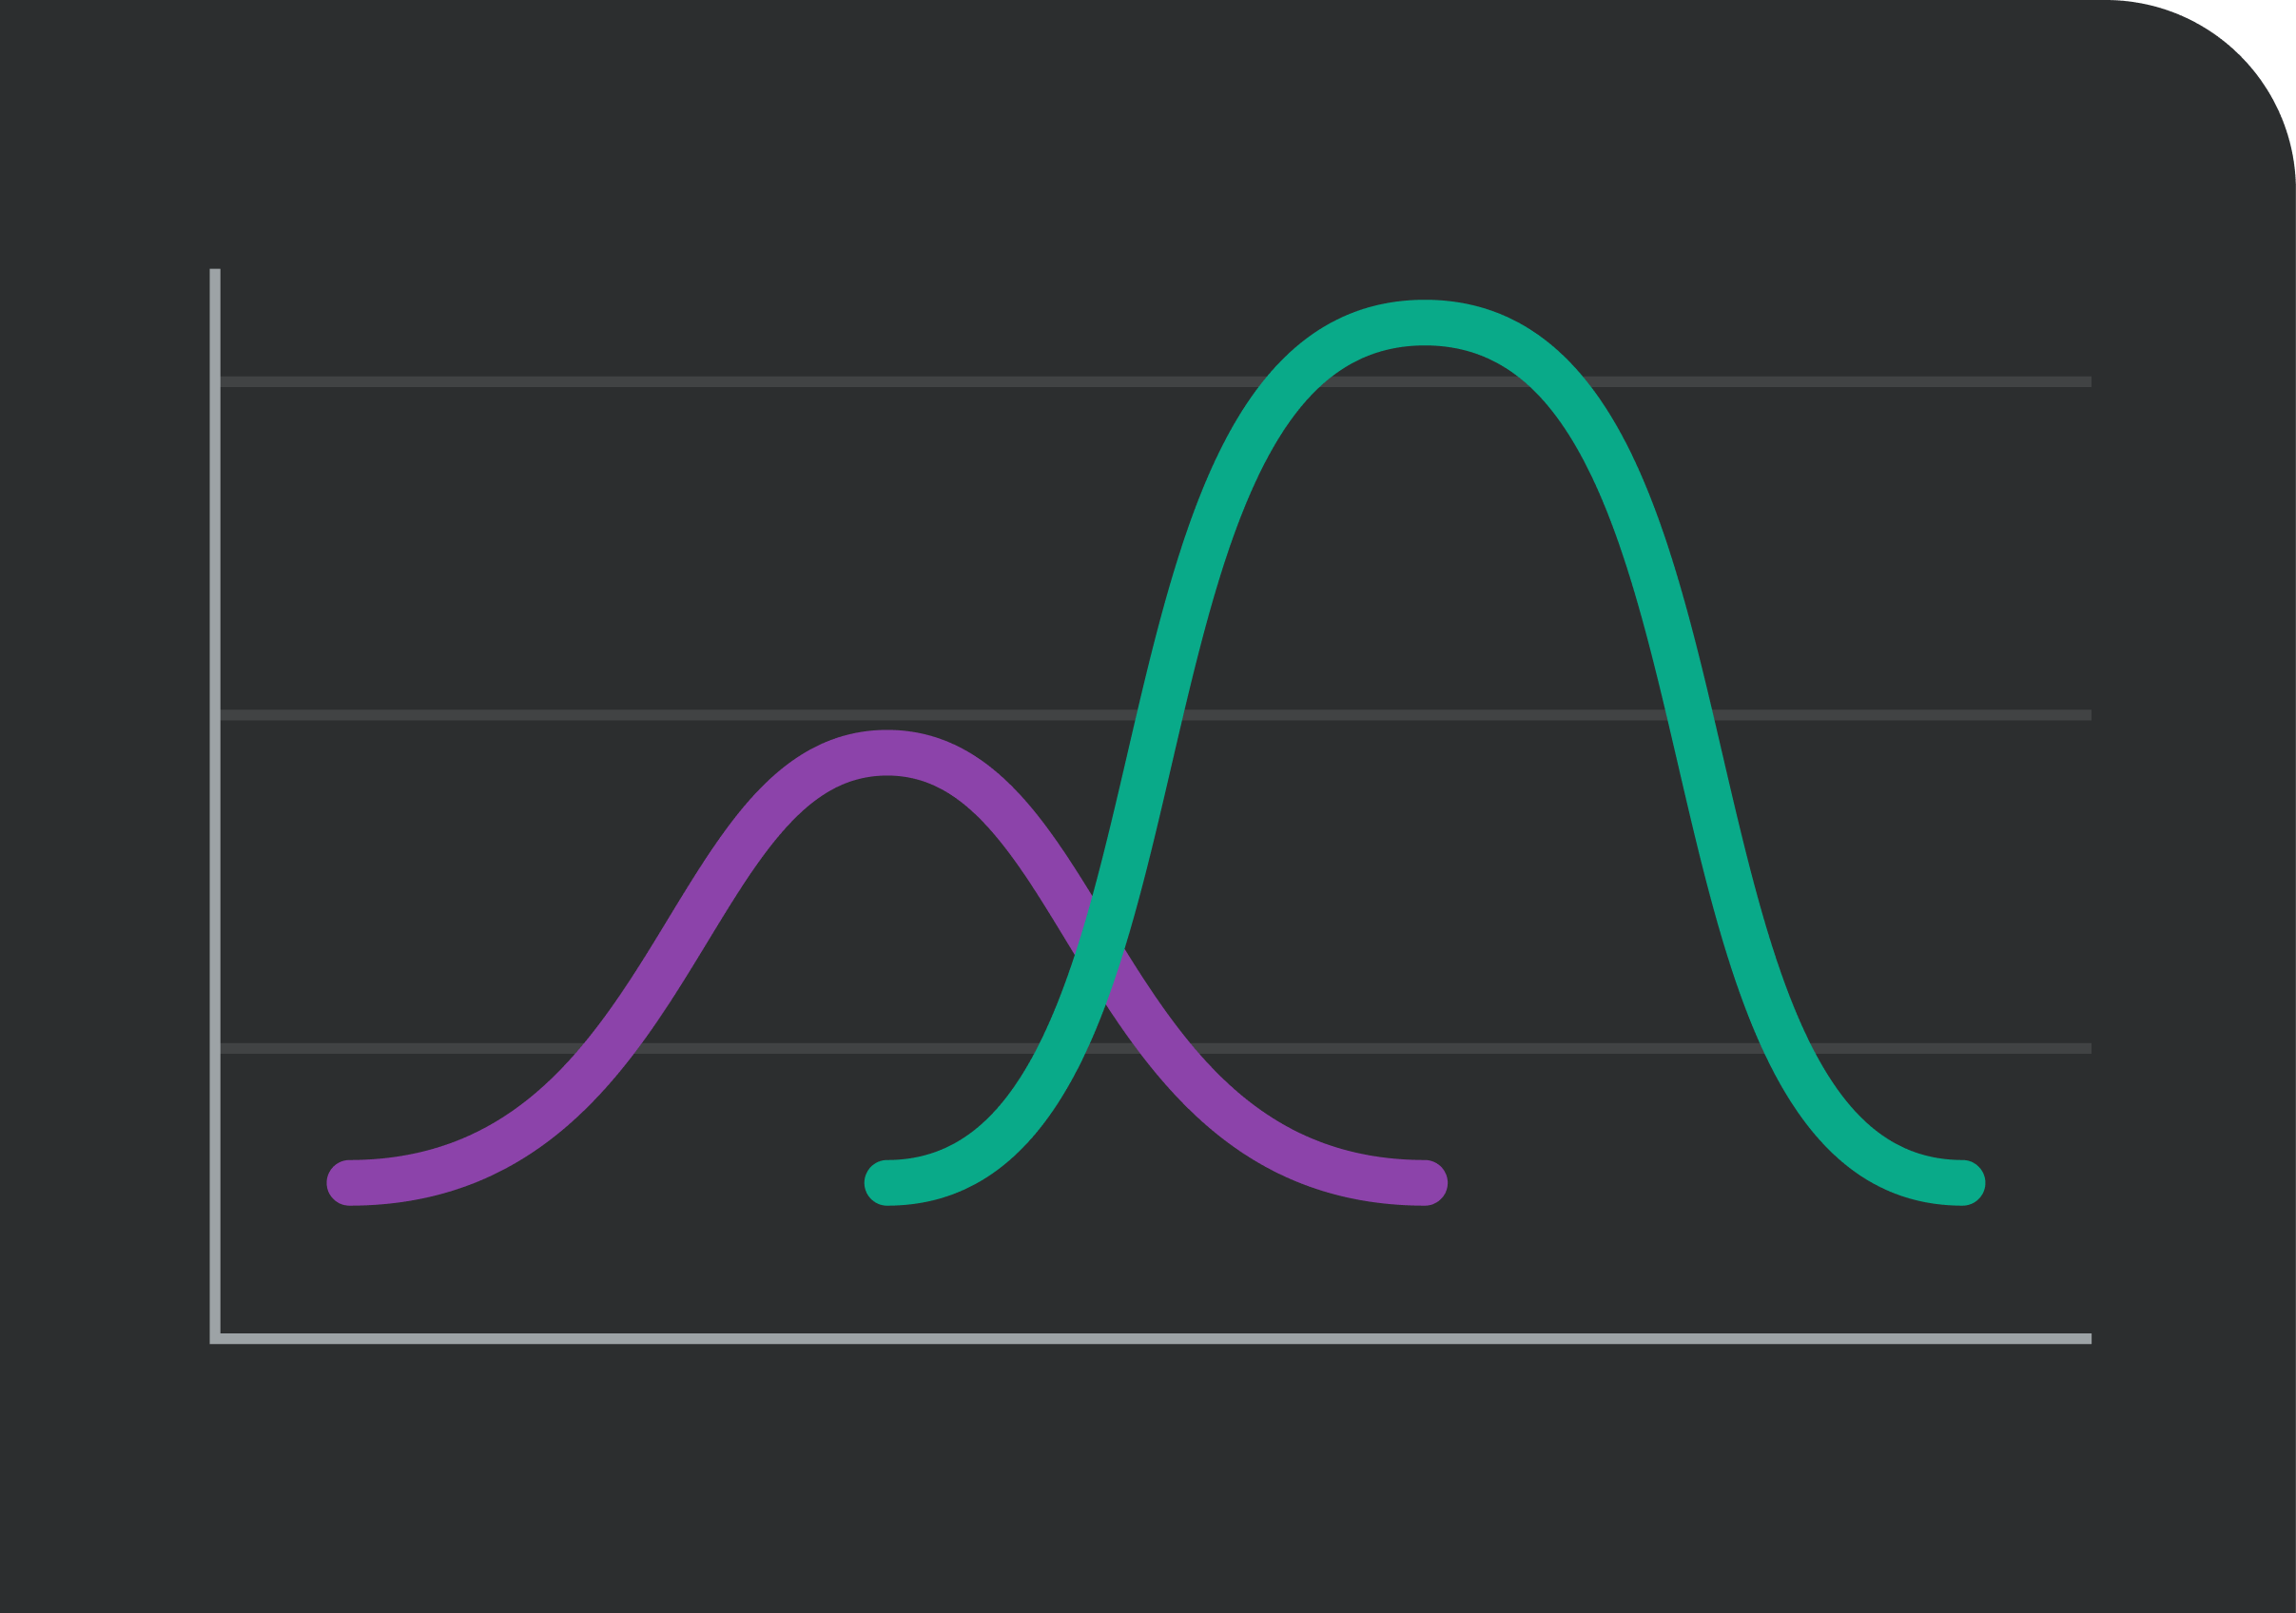 Gráfico com 2 linhas de tendência, que representa a forma como uma empresa pode seguir as previsões